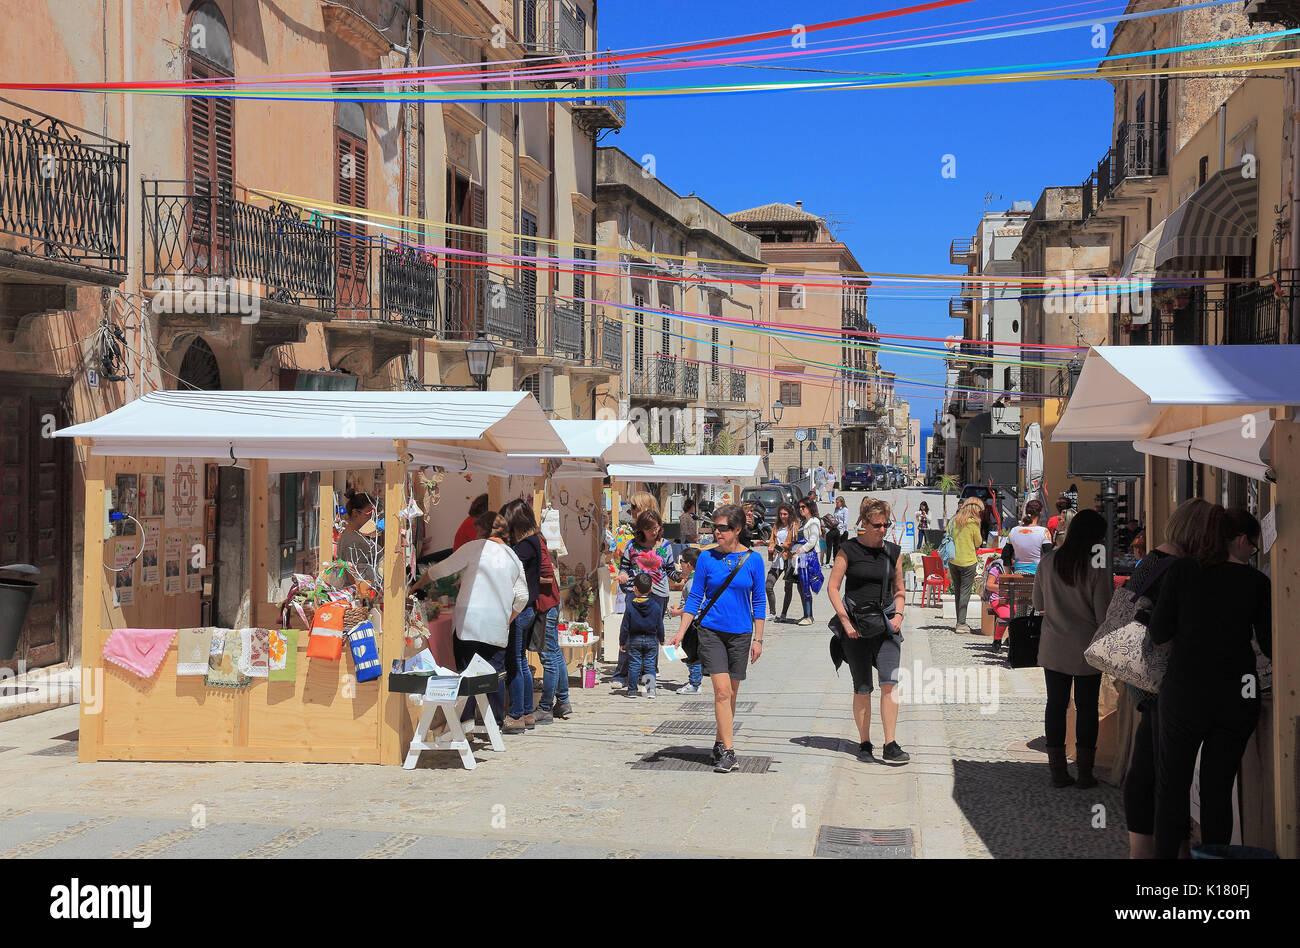 Sicily, Castellammare del Golfo, municipality in the province of Trapani, in the pedestrian zone Stock Photo